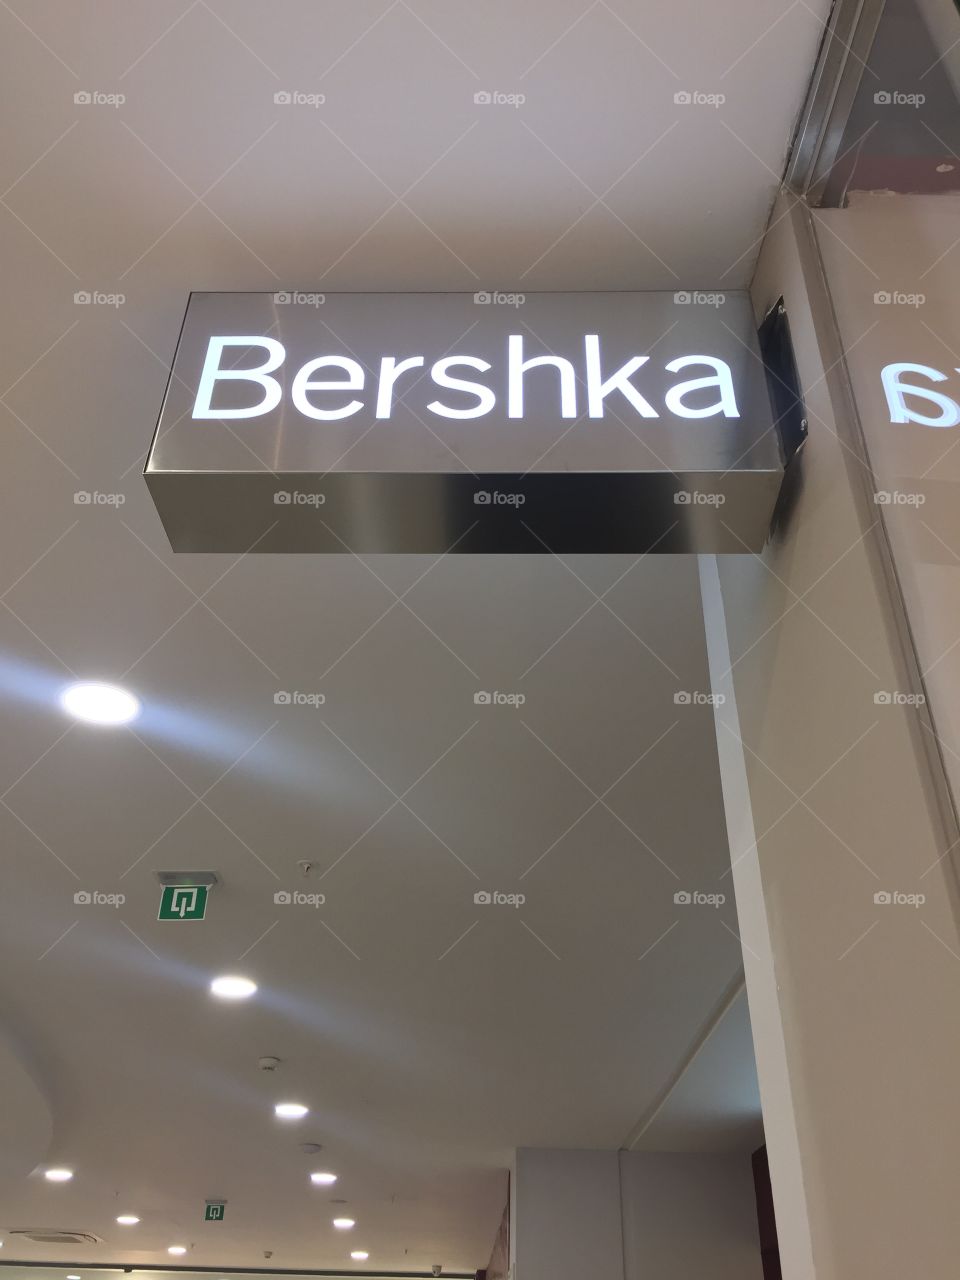 Bershka Brand